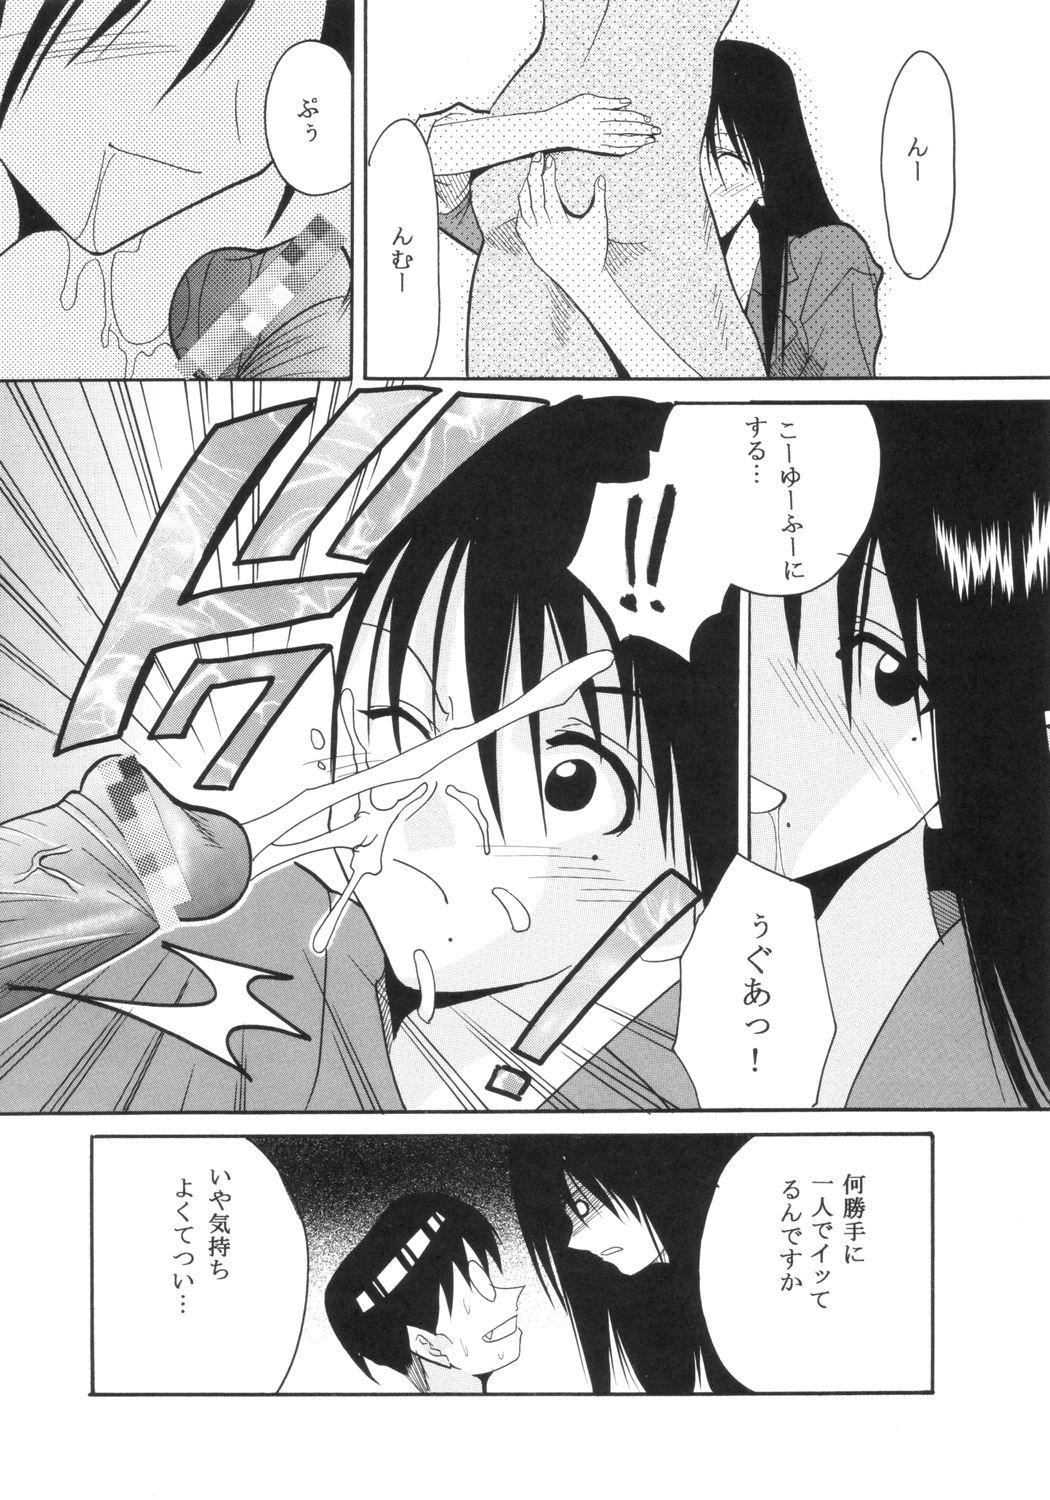 Piroca GenCKen 6 - Genshiken Ex Girlfriend - Page 11